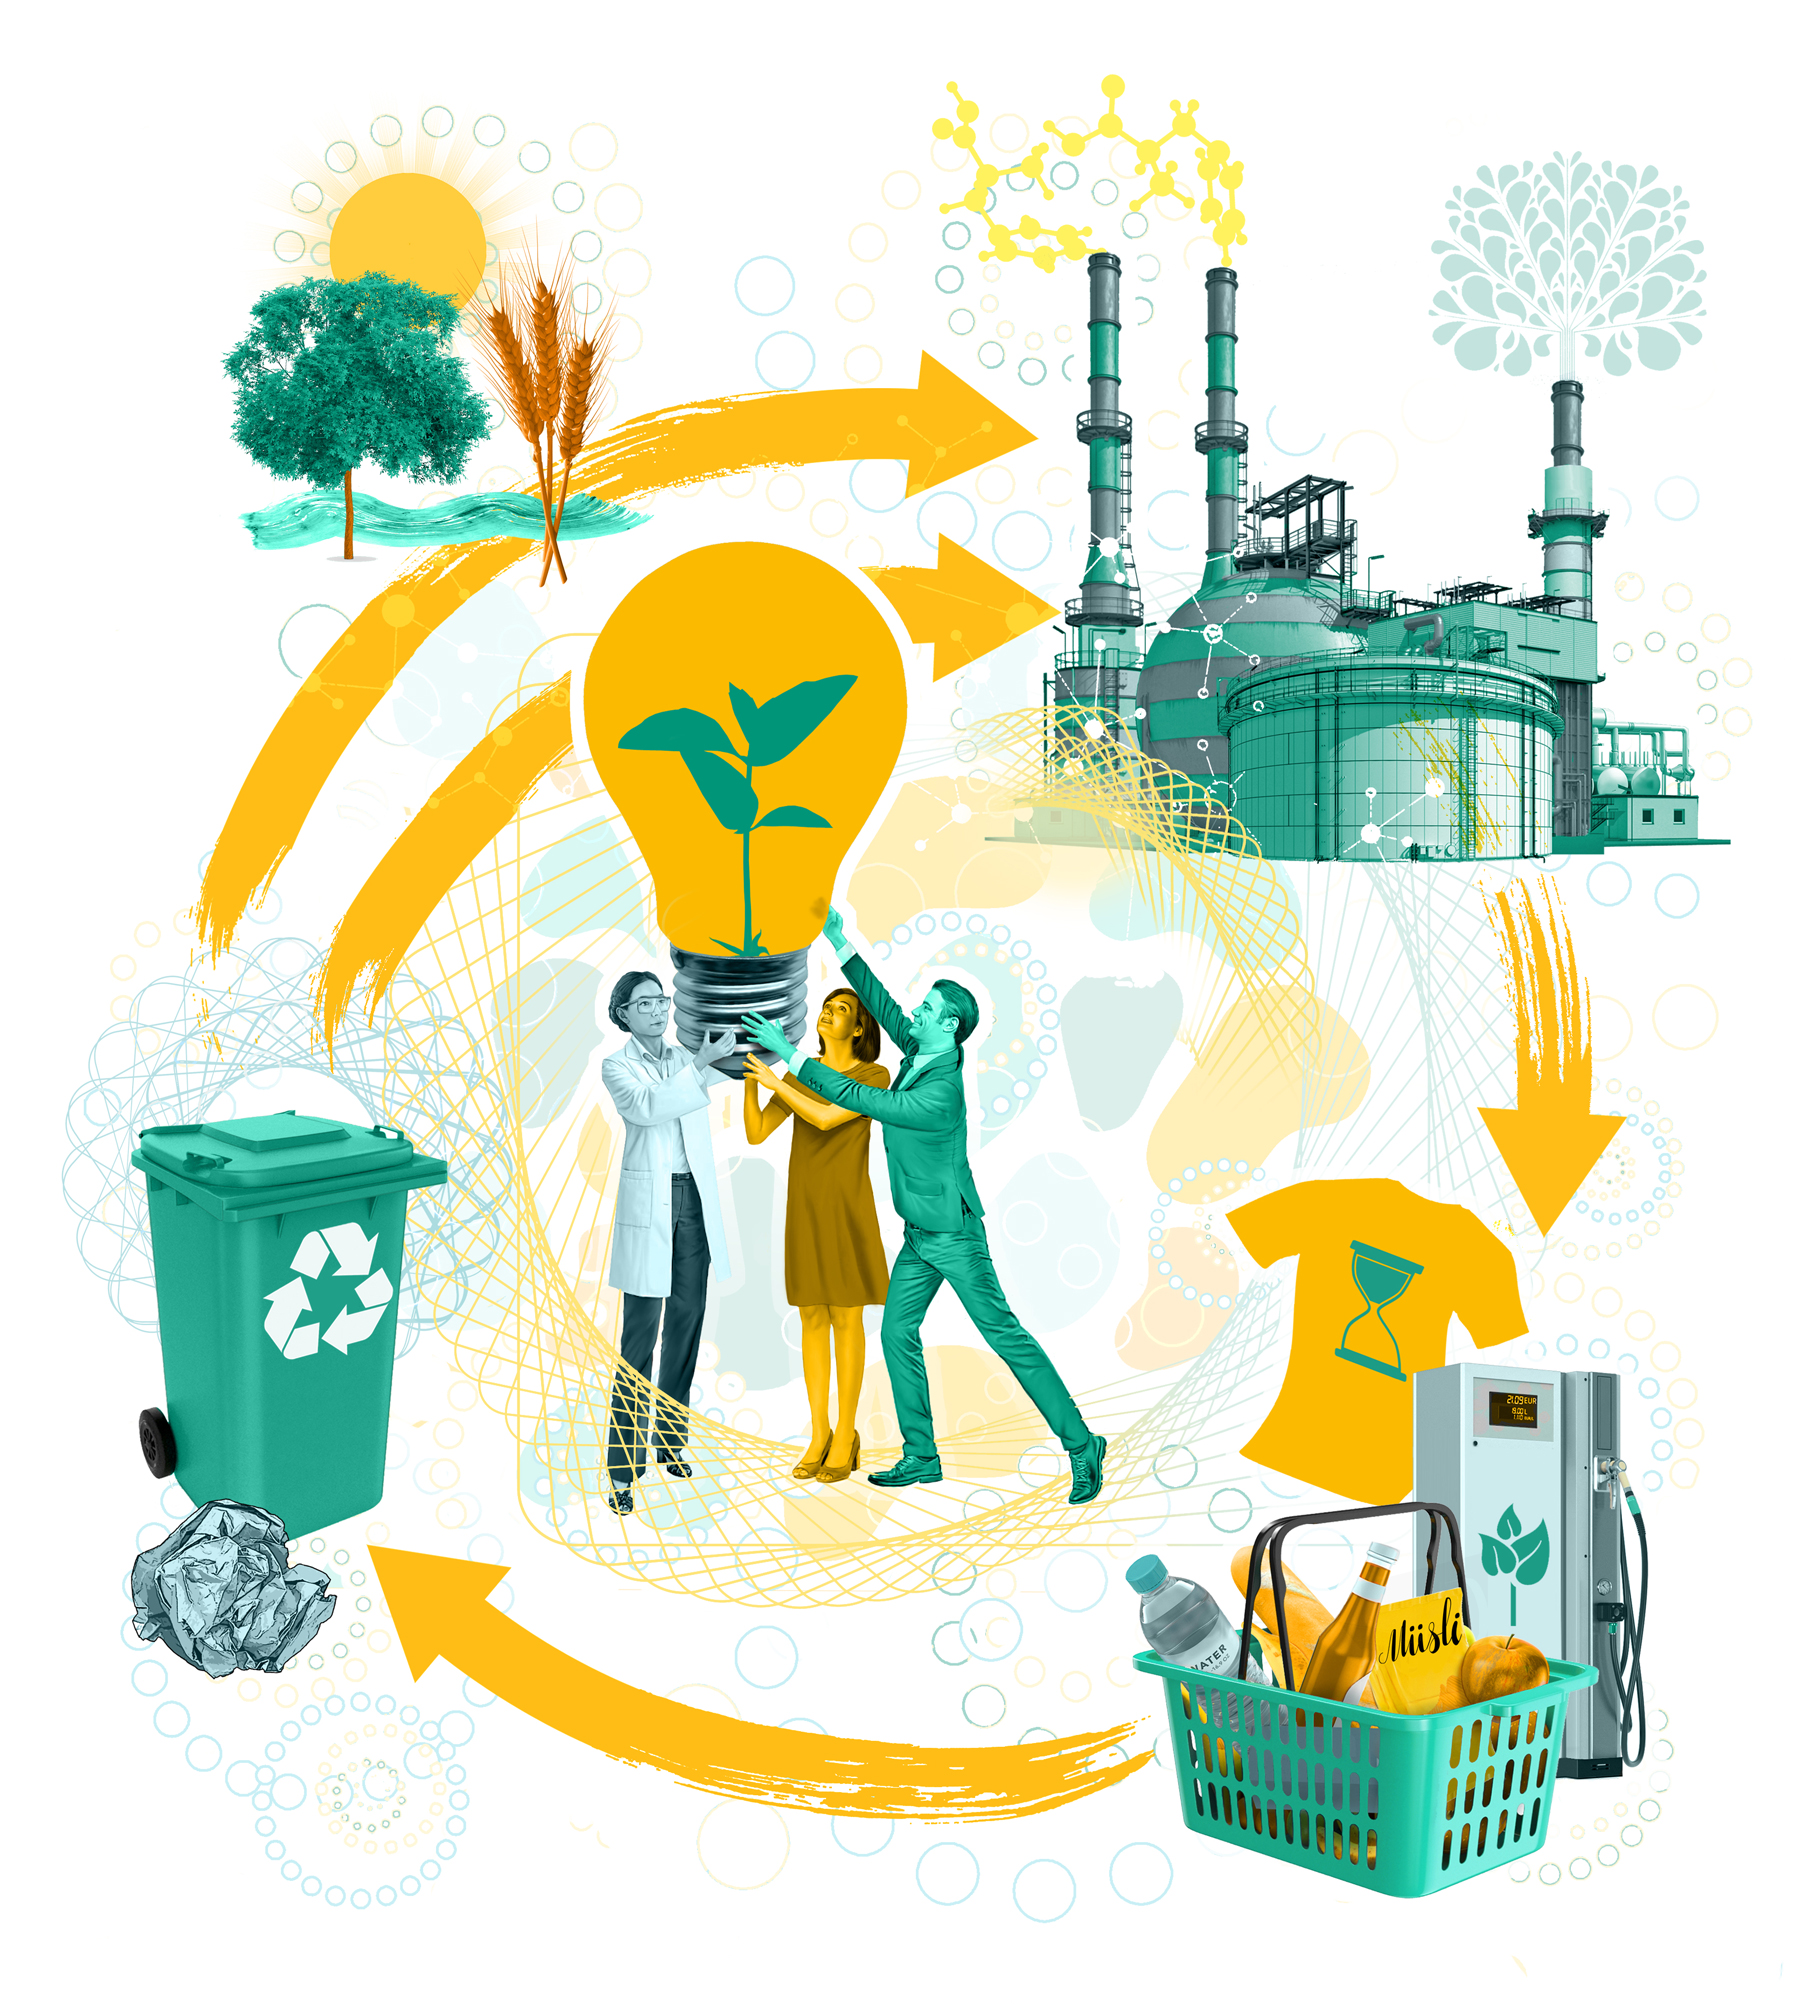 Die Computergrafik zeigt einen Produktkreislauf mit den bildlich dargestellten Stationen Rohstoffe, Produktion, Handel, Recycling.